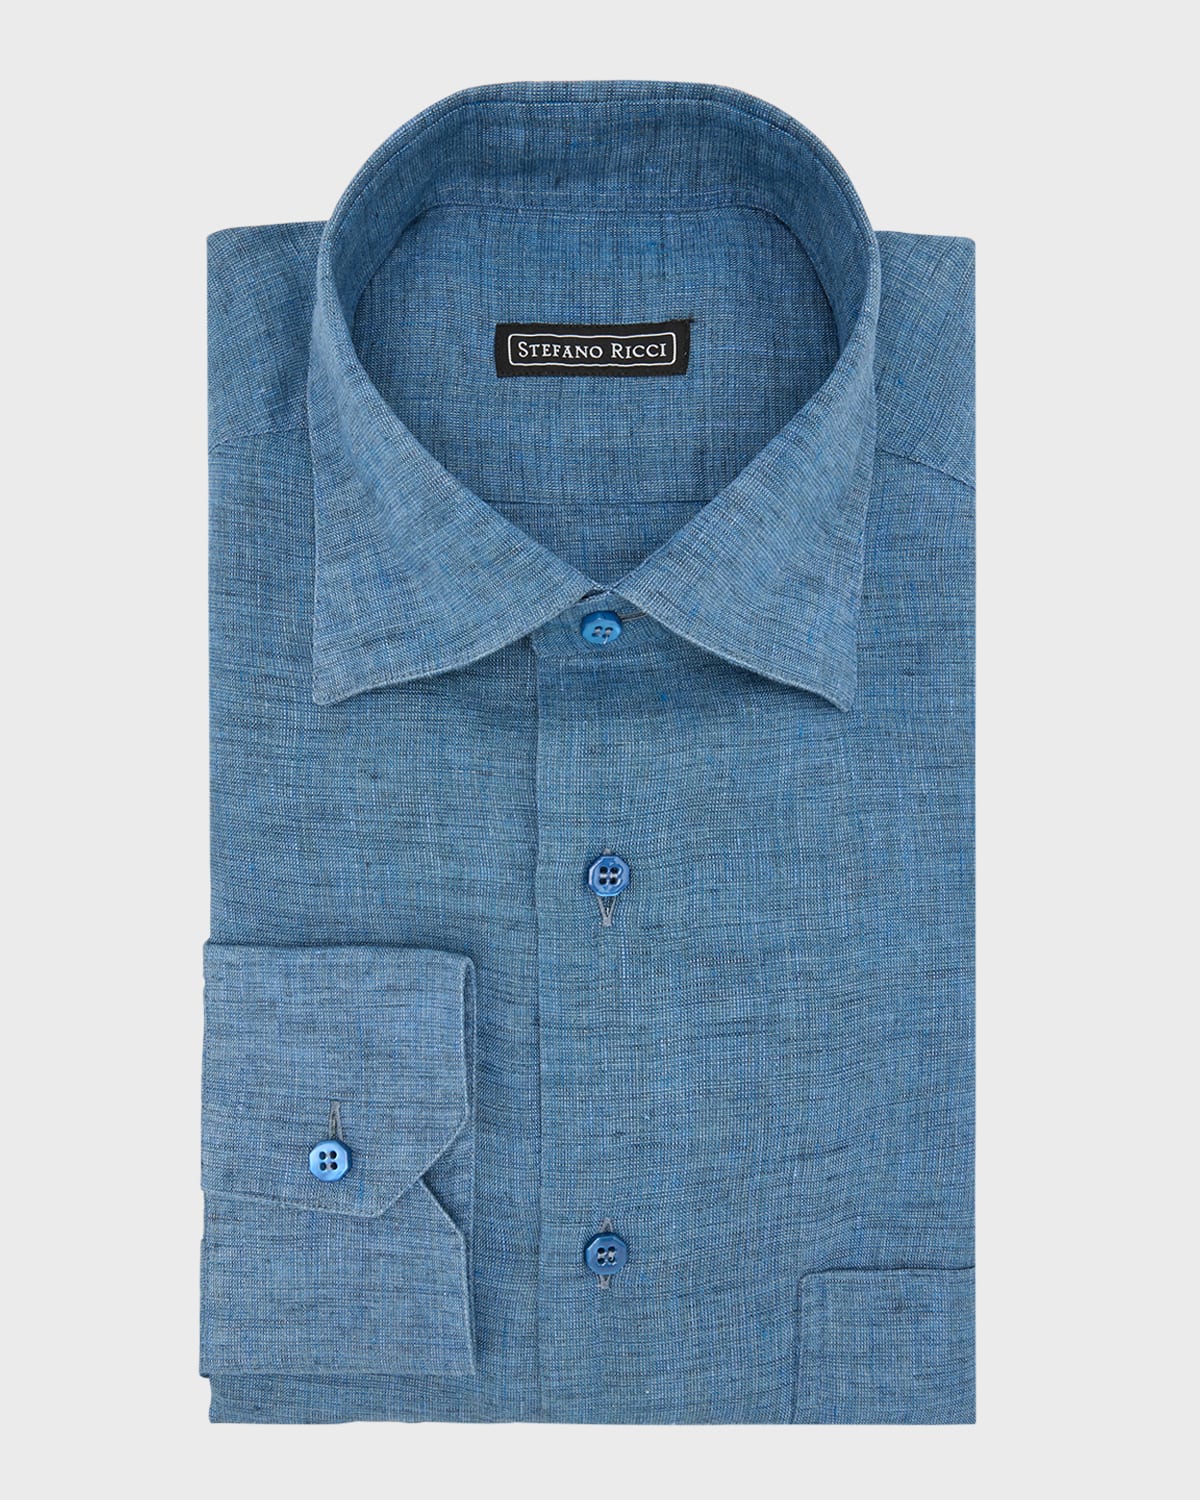 Shop Stefano Ricci Men's Linen Sport Shirt In Light Blue